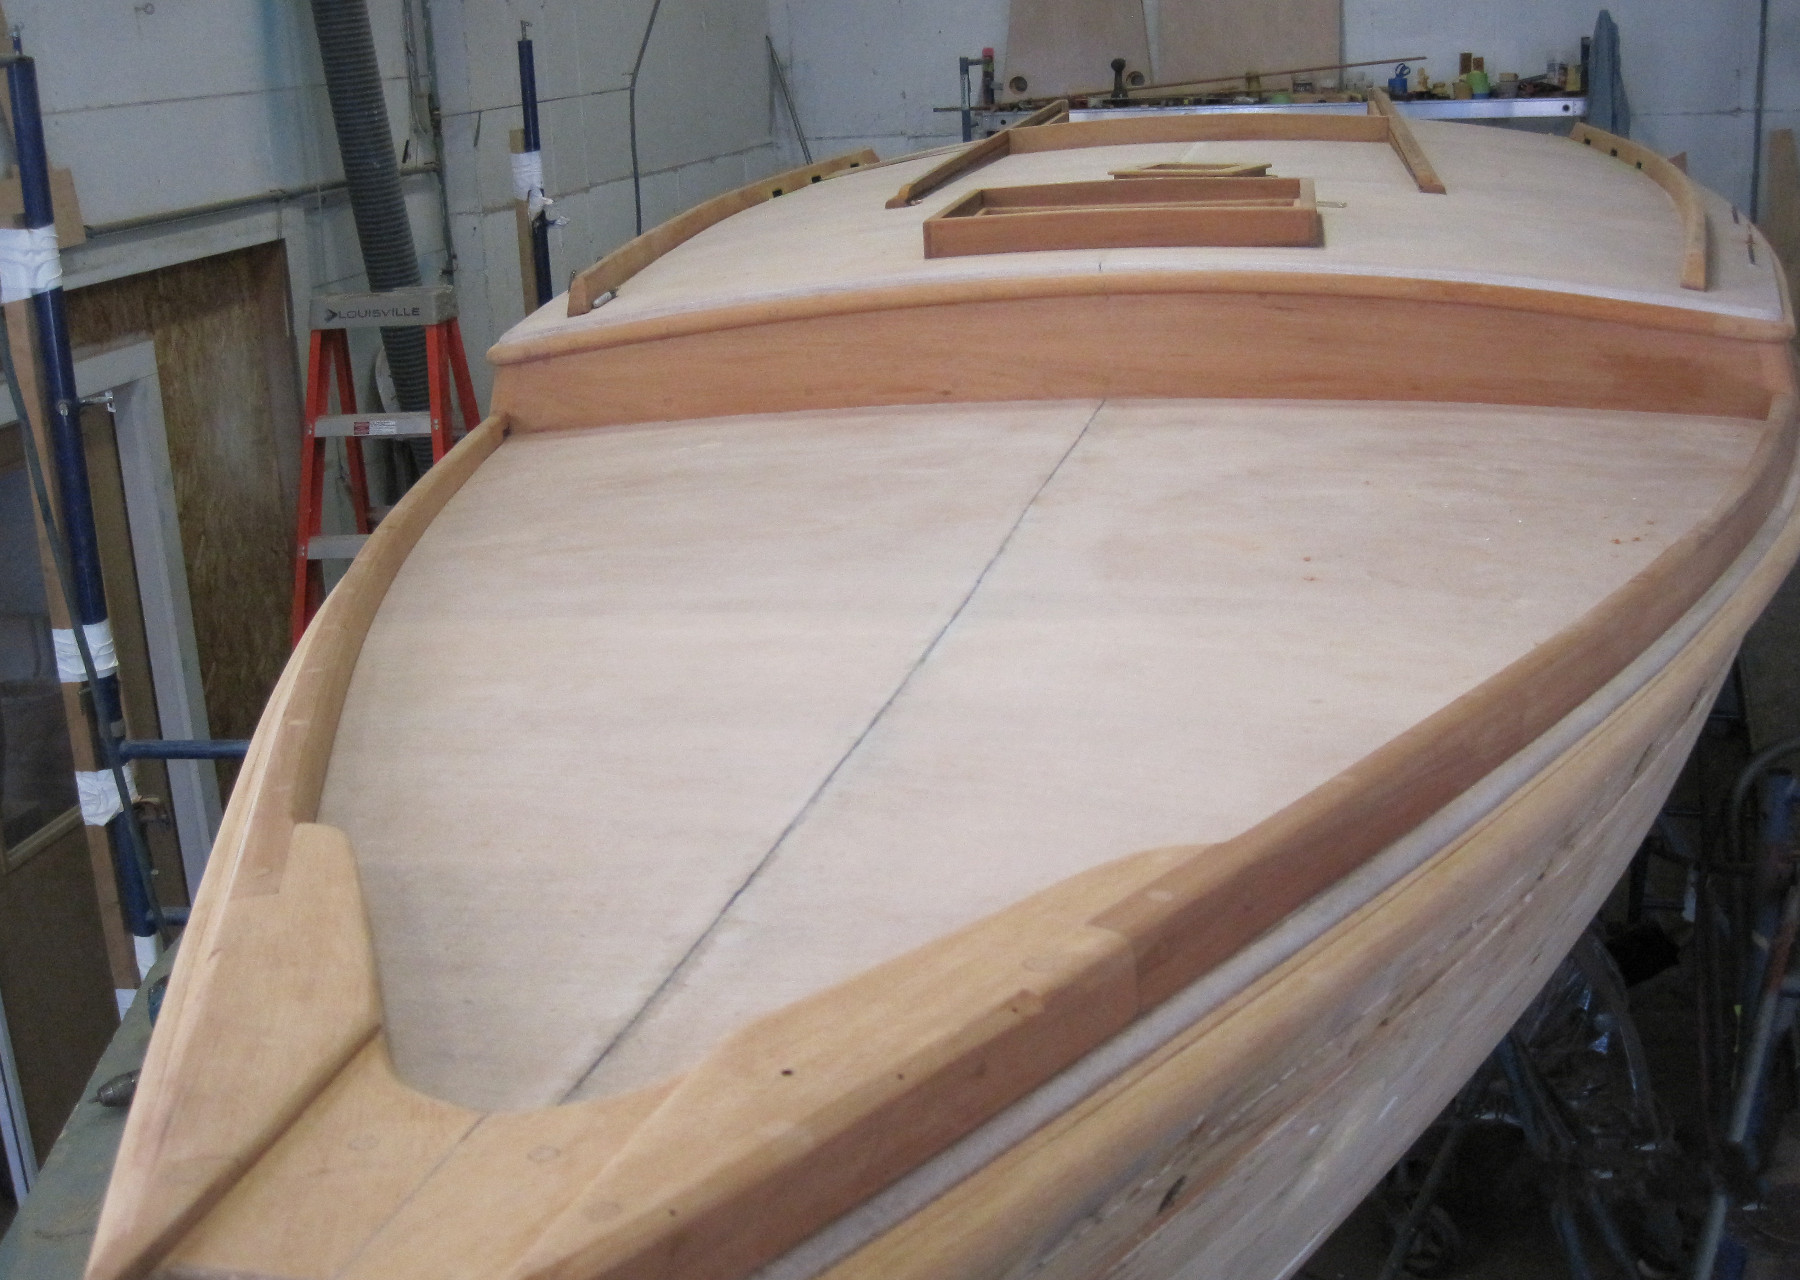 Wooden Boat Restoration - Kestrel - House woodwork finished, toerails installed.